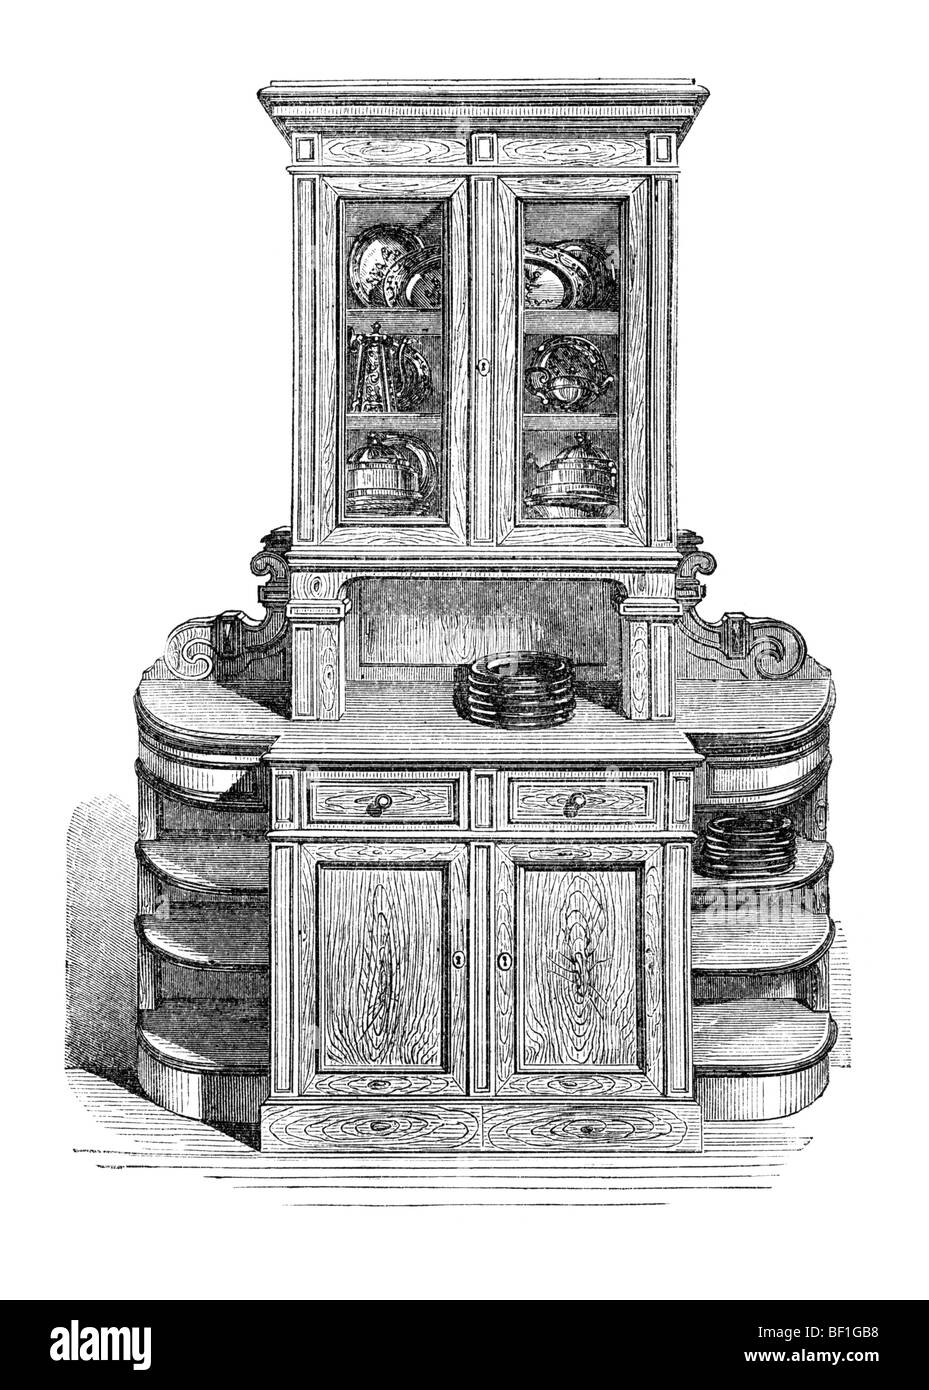 Bahut de salle à manger, d'une illustration historique de : Marie Adenfeller, Friedrich Werner : la cuisson et housekee Banque D'Images